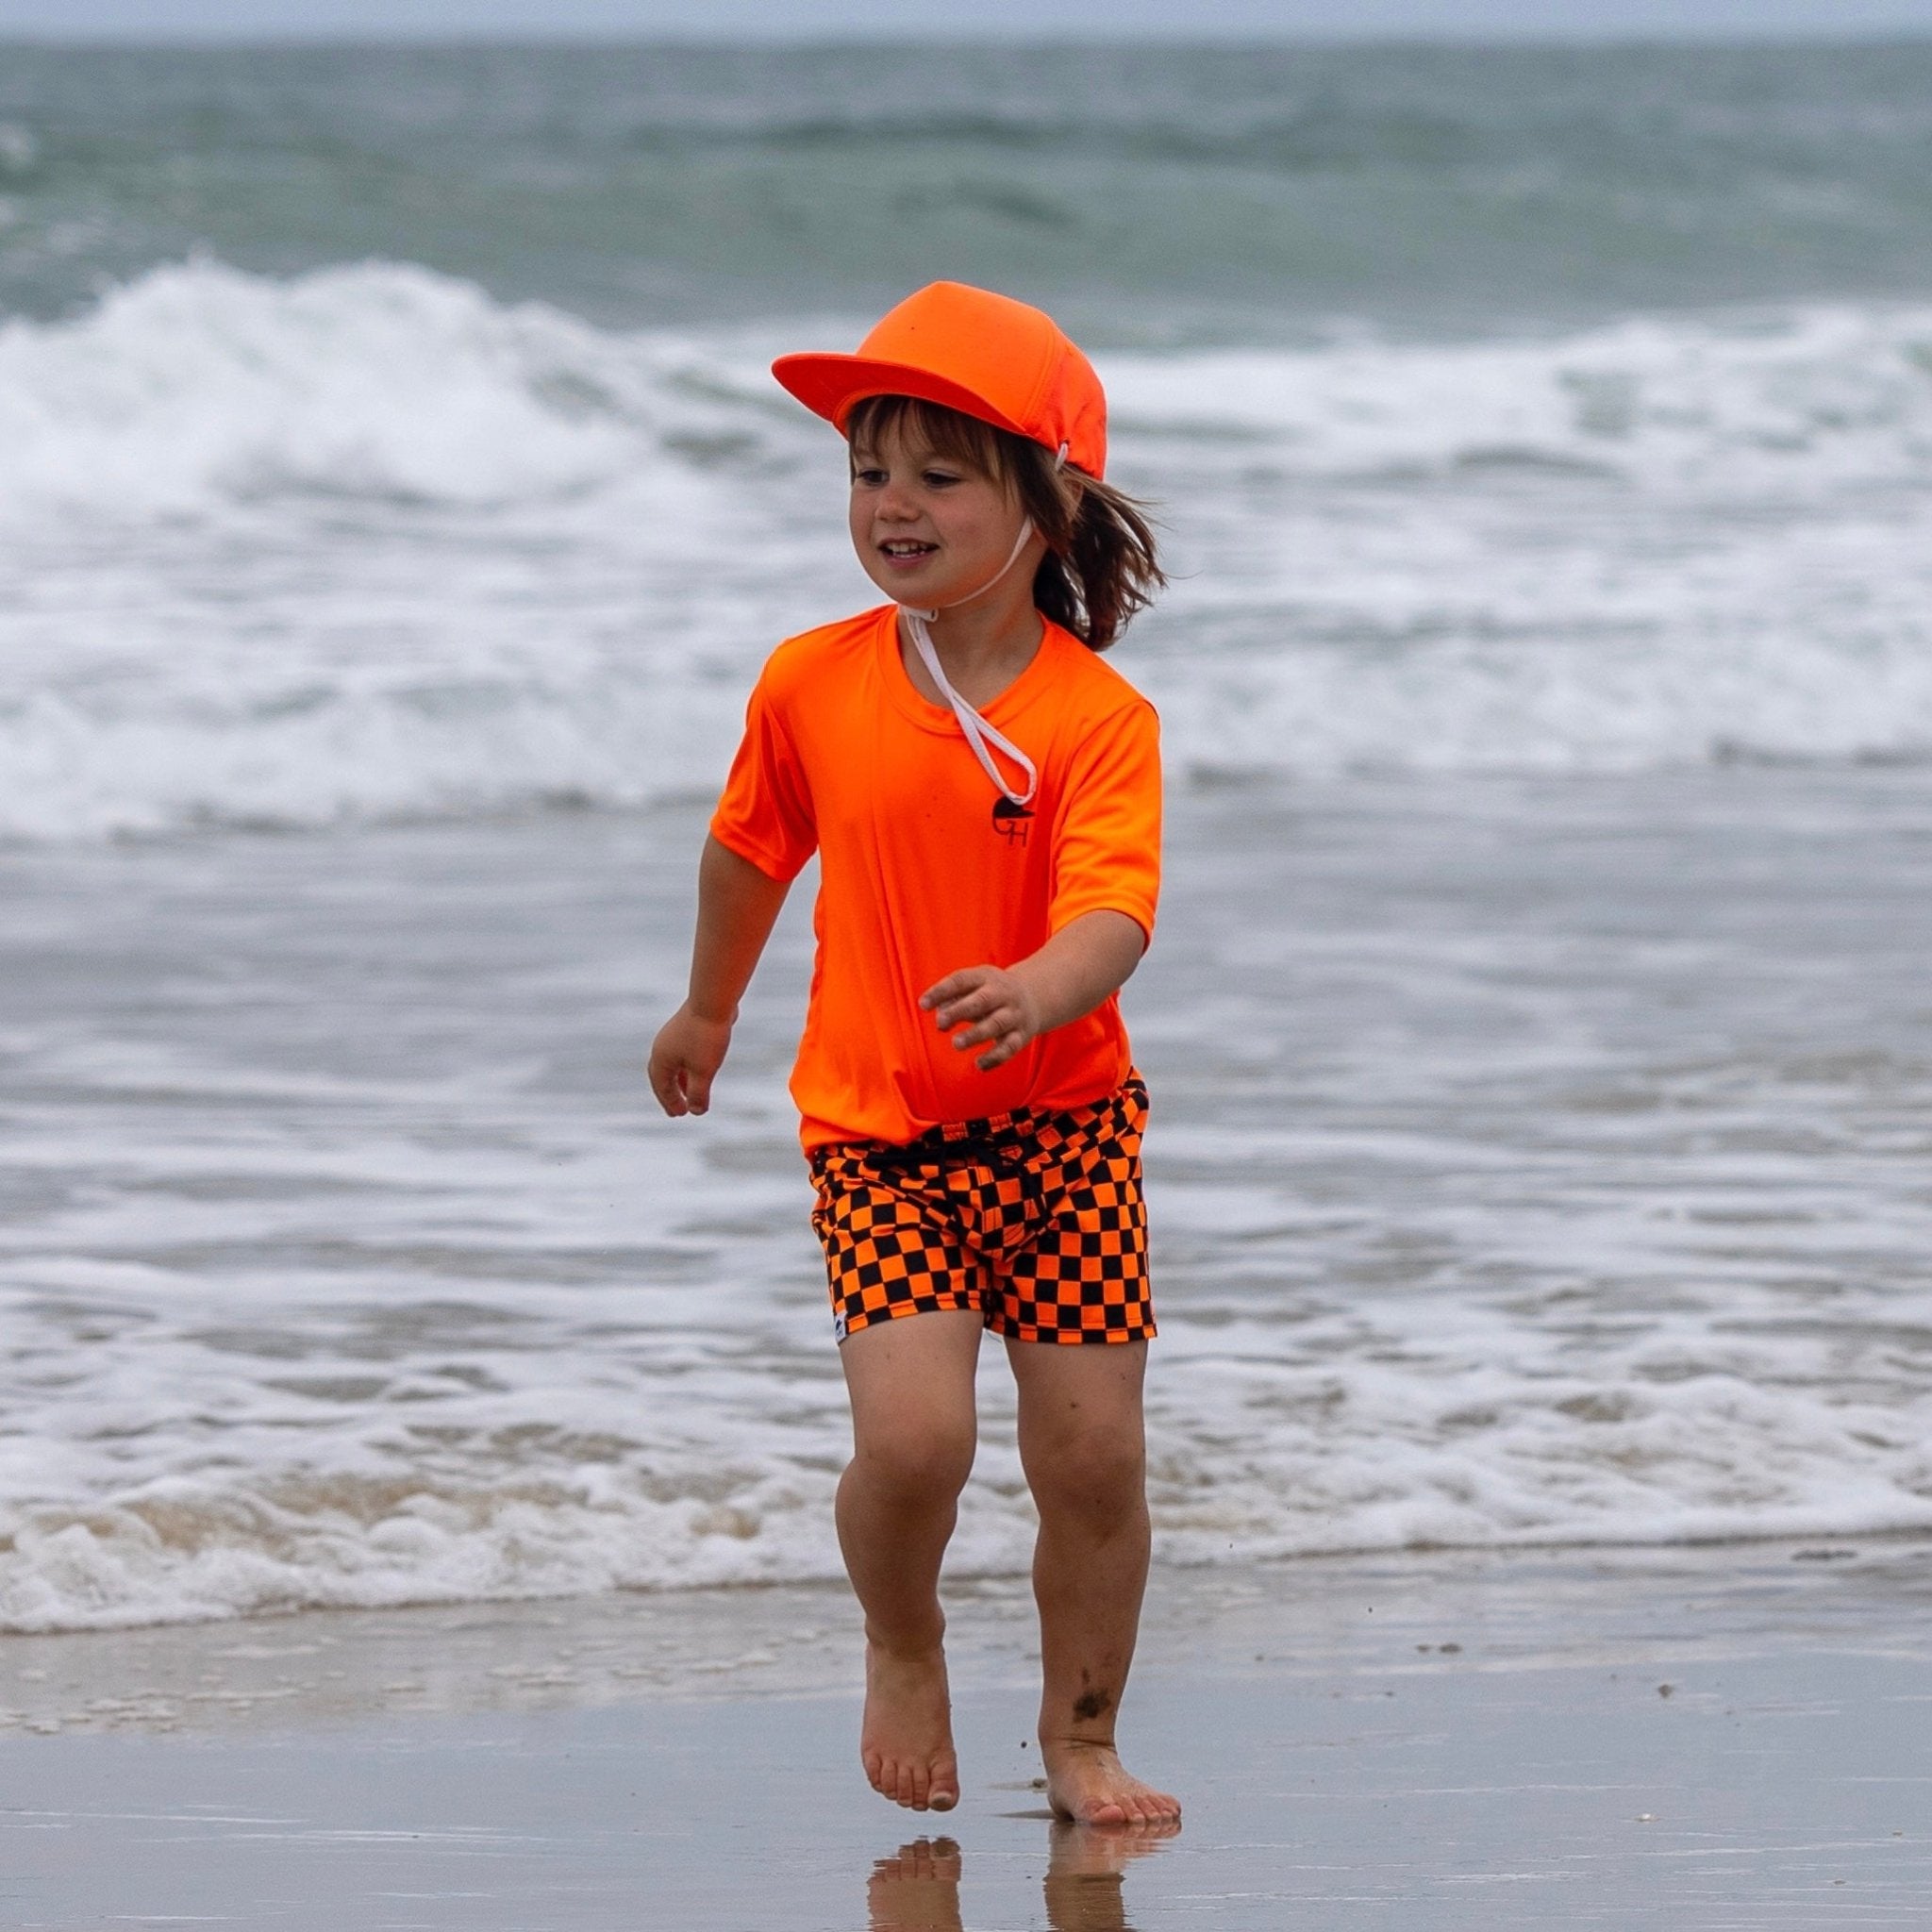 Neon Orange Surf Hat - George Hats